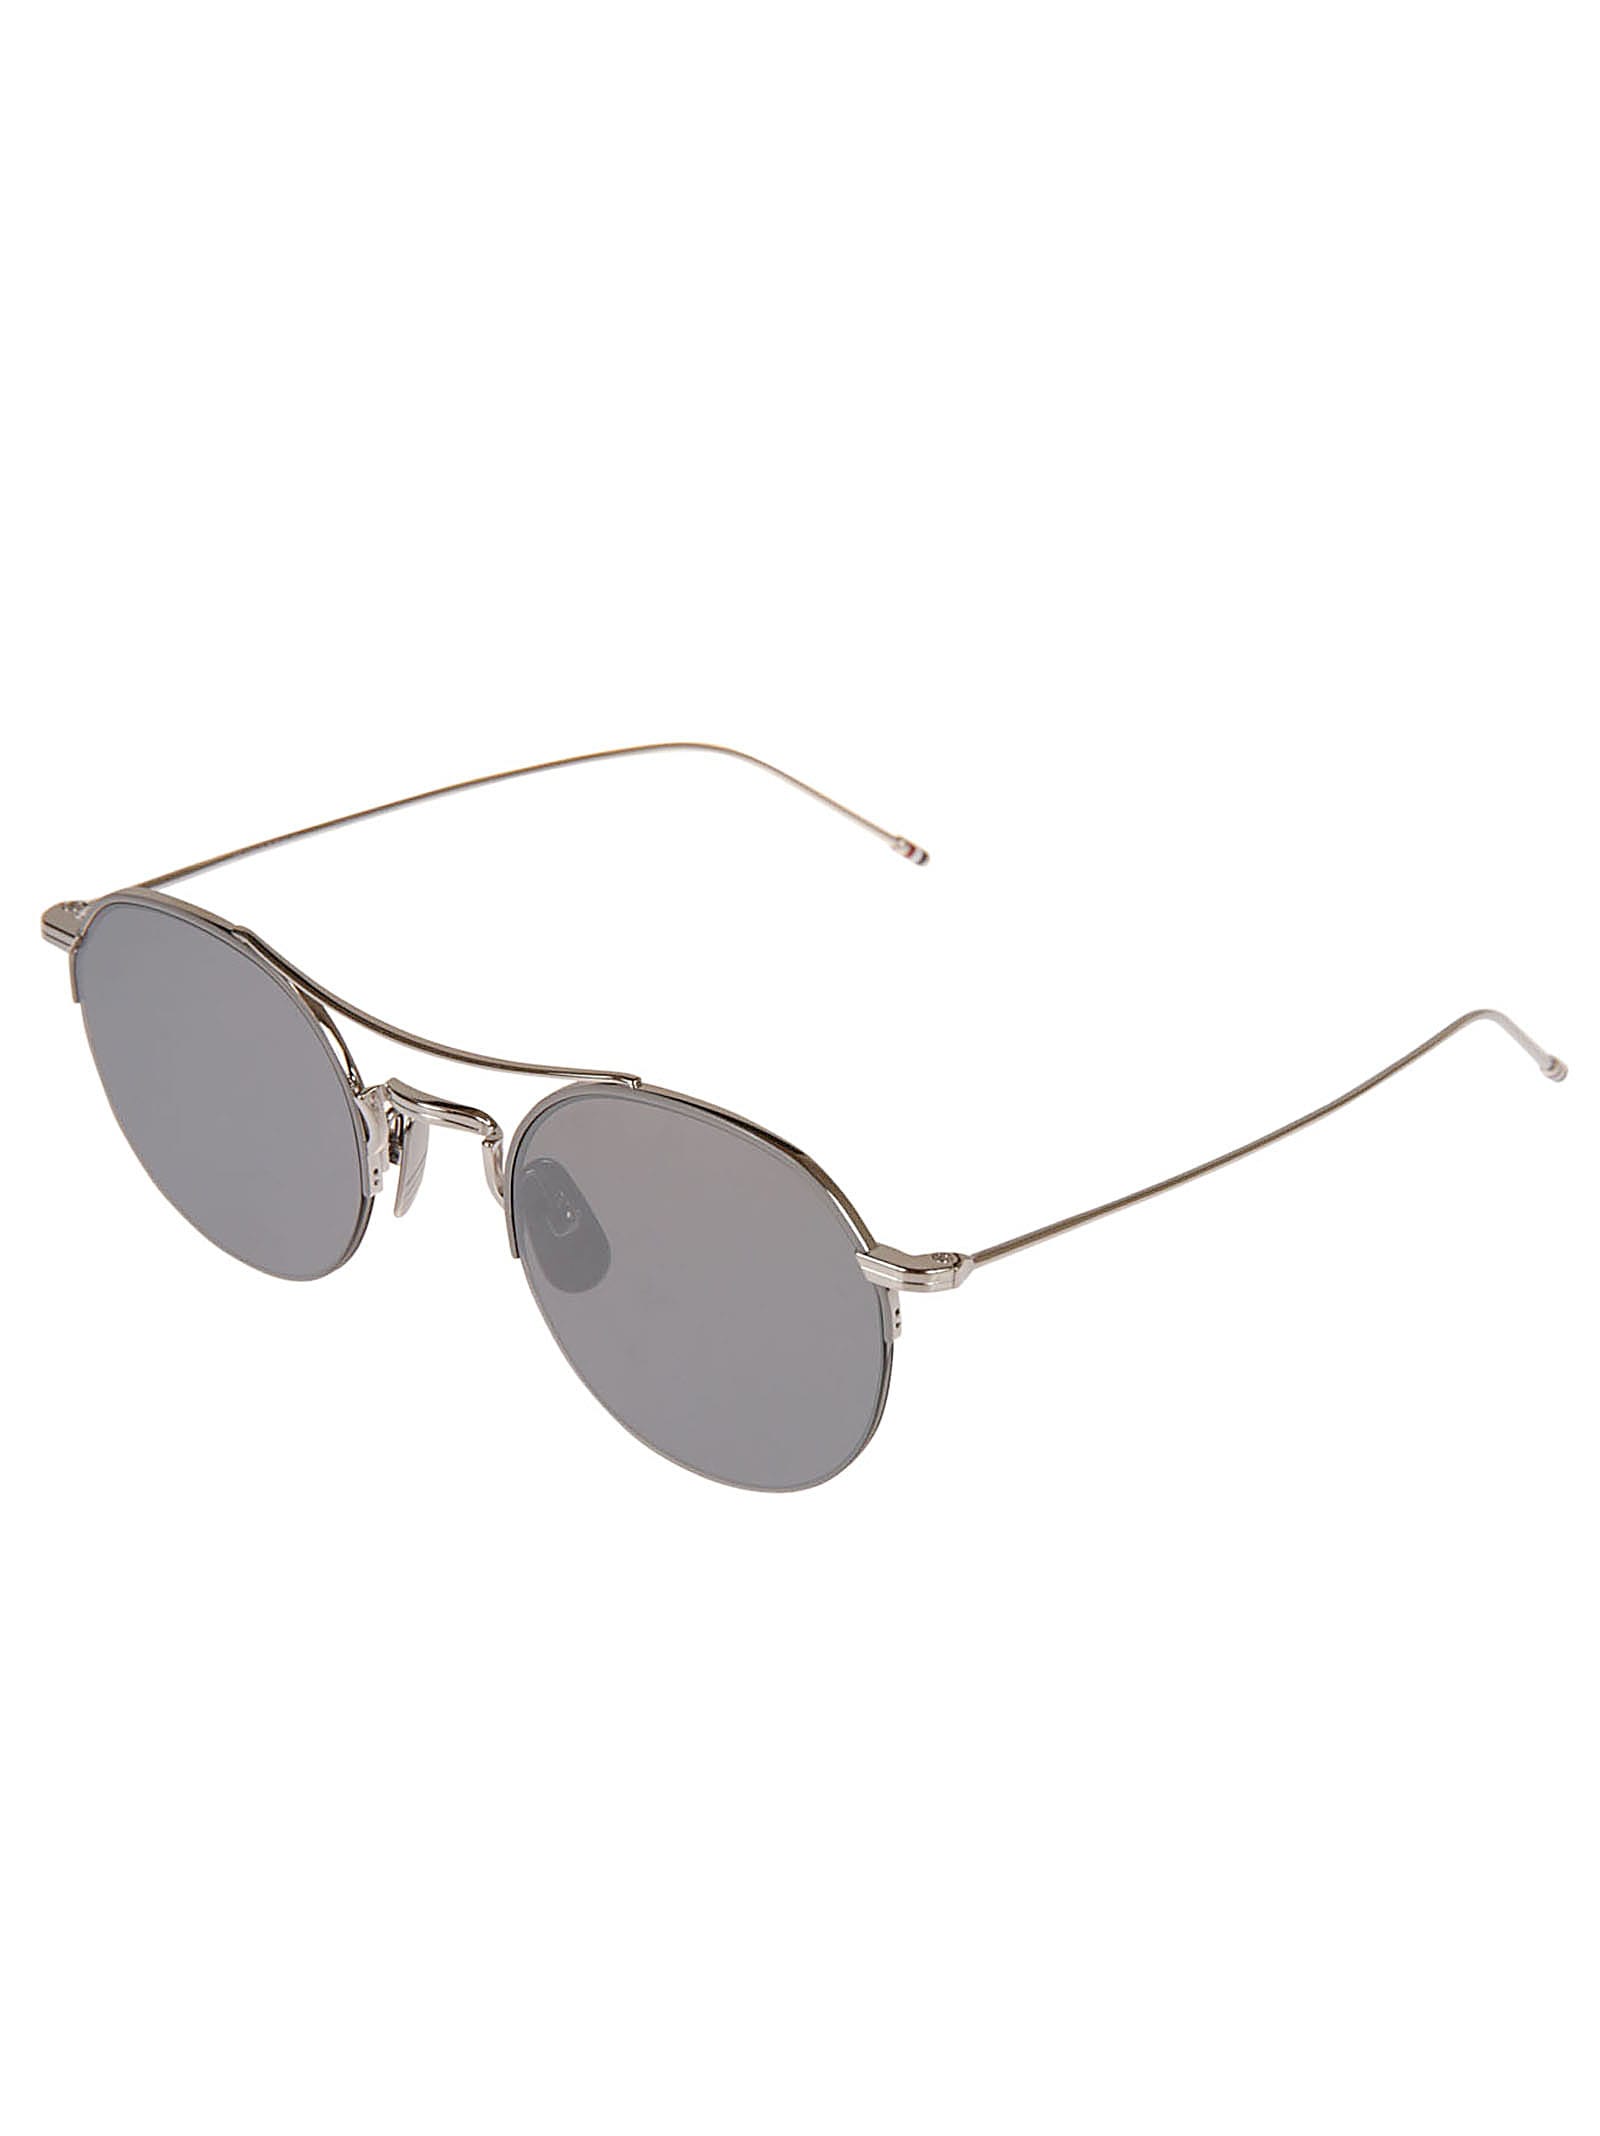 Shop Thom Browne Round Frame W/ Top Bar Sunglasses In Silver Black Enamel W